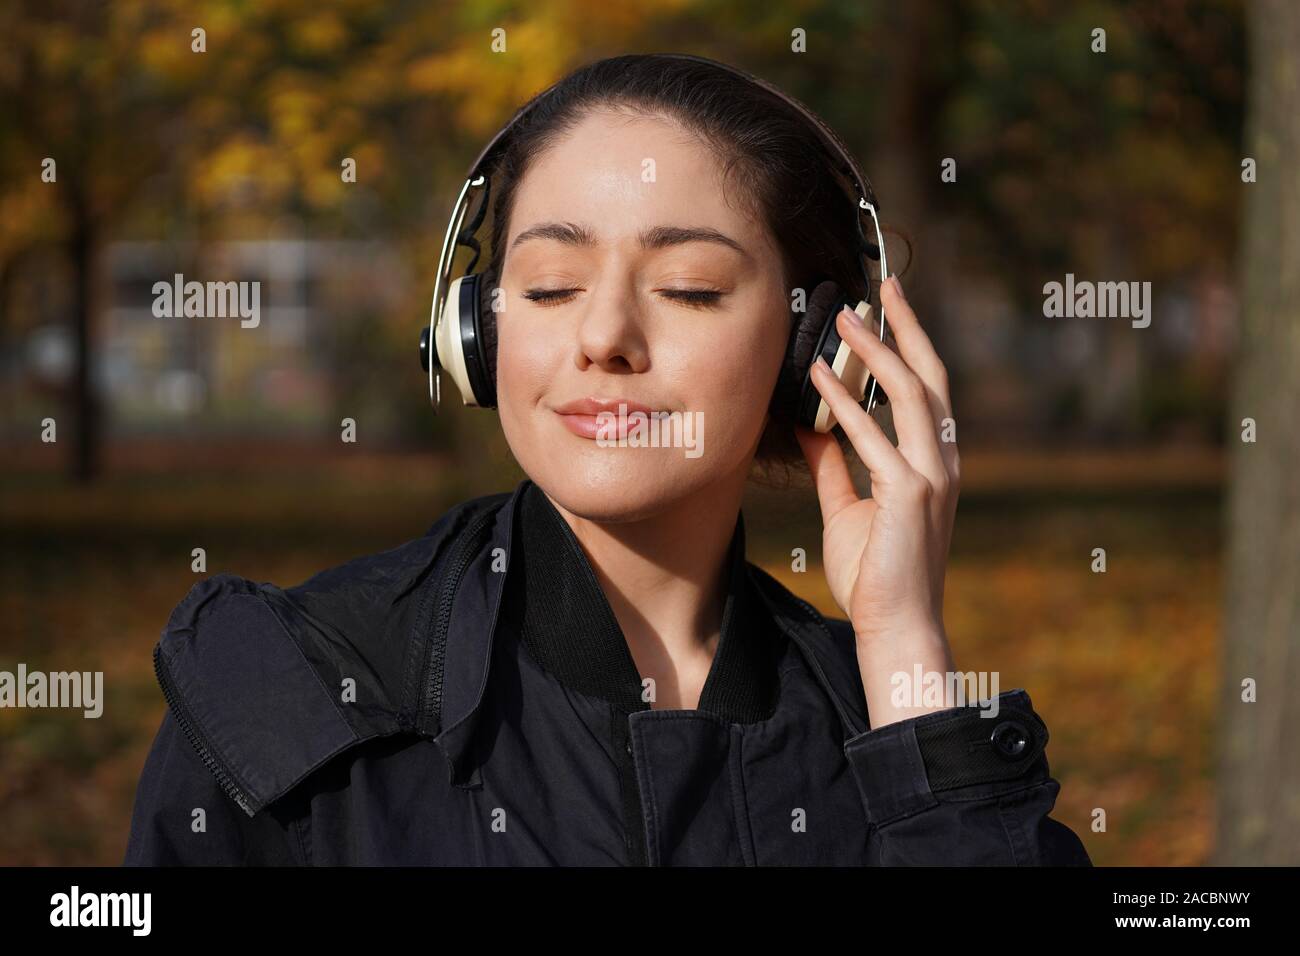 Junge Frau in ihrem 20s Abspielen von Musik mit drahtlosen Kopfhörern im Freien - candid Herbst lifestyle Stockfoto